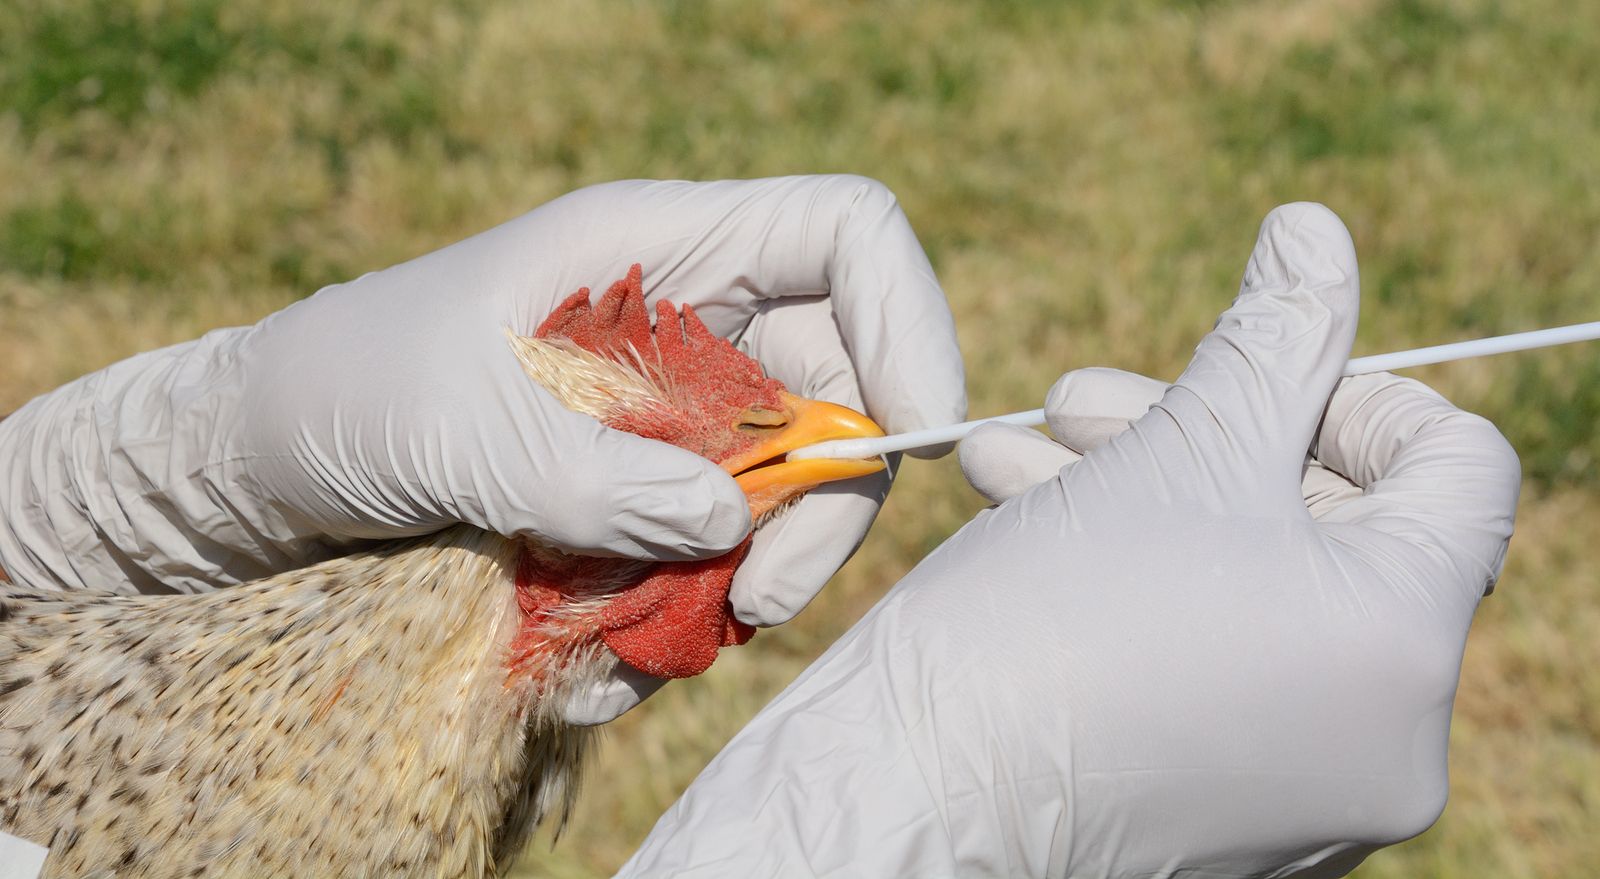 La OMS ve "bajo" el riesgo de transmisión de gripe aviar entre humanos